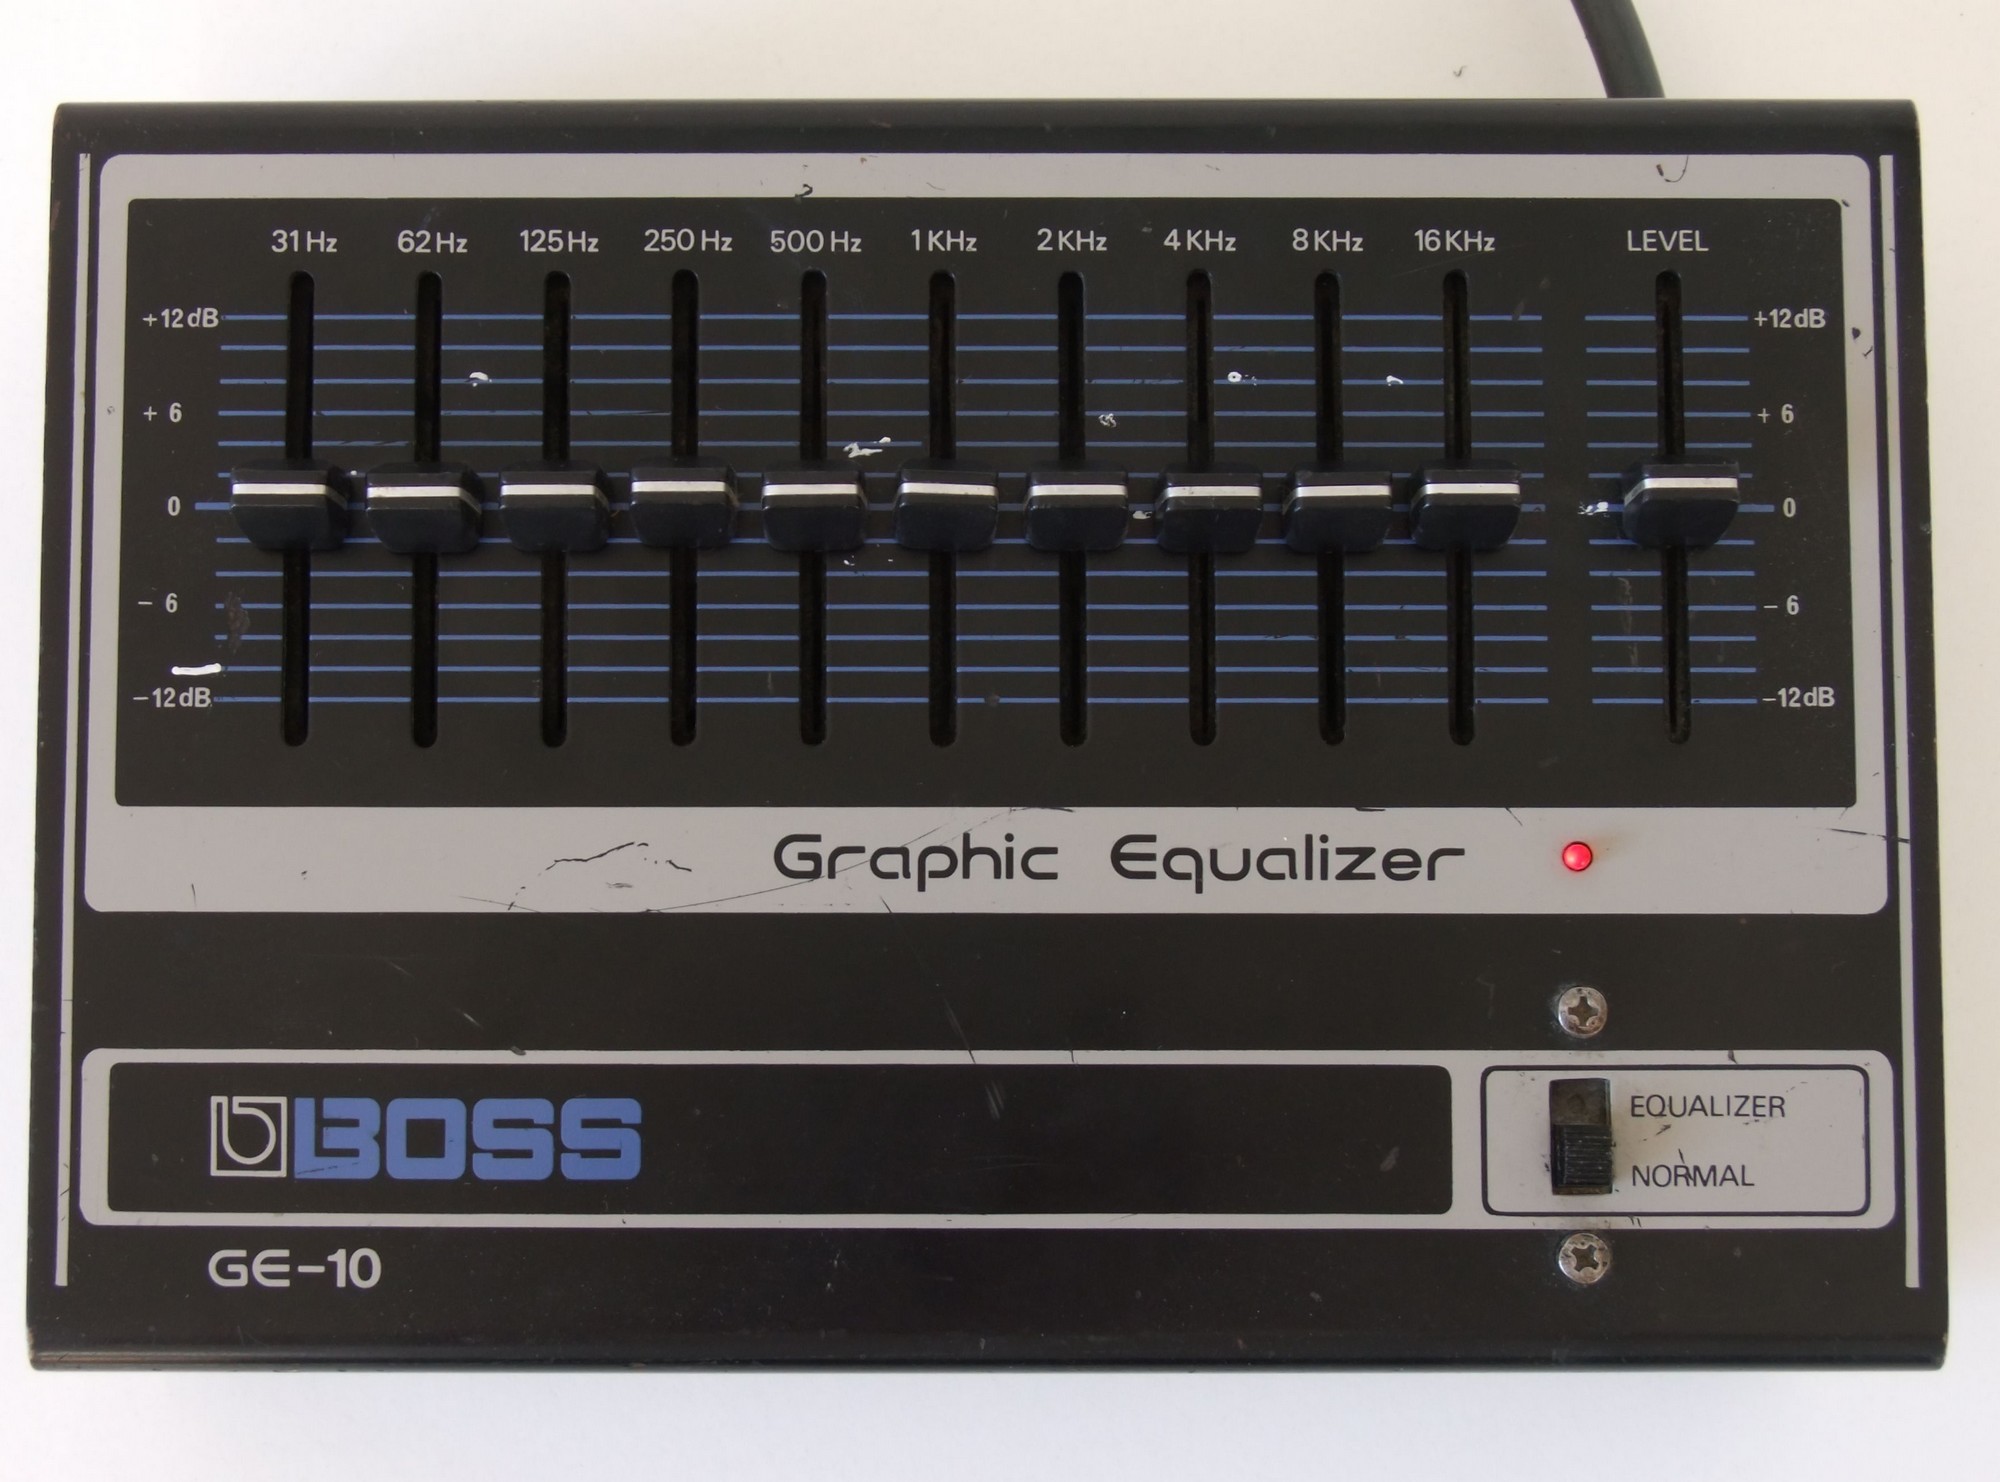 GE-10 Graphic Equalizer - Boss GE-10 Graphic Equalizer - Audiofanzine